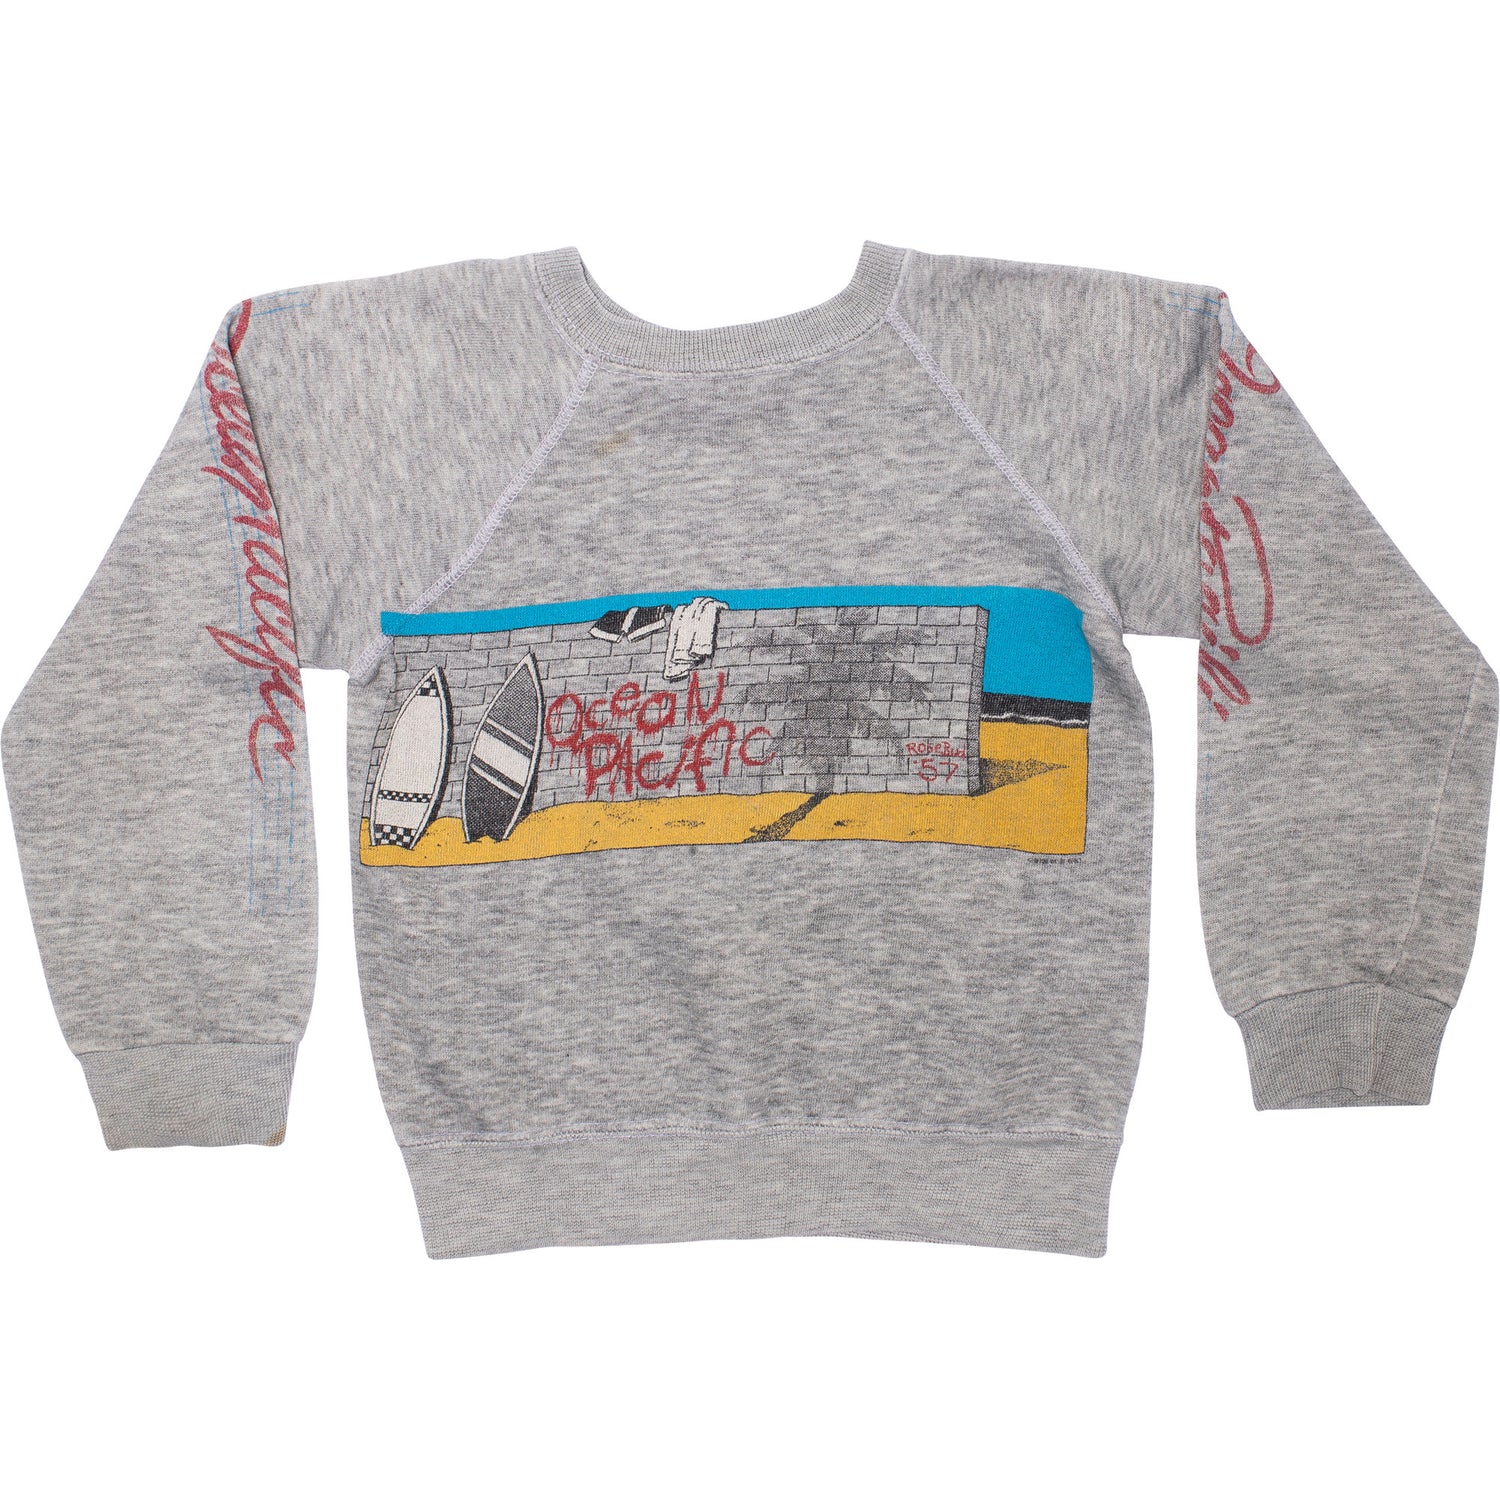 KIDS Ocean Pacific Vintage Sweatshirt